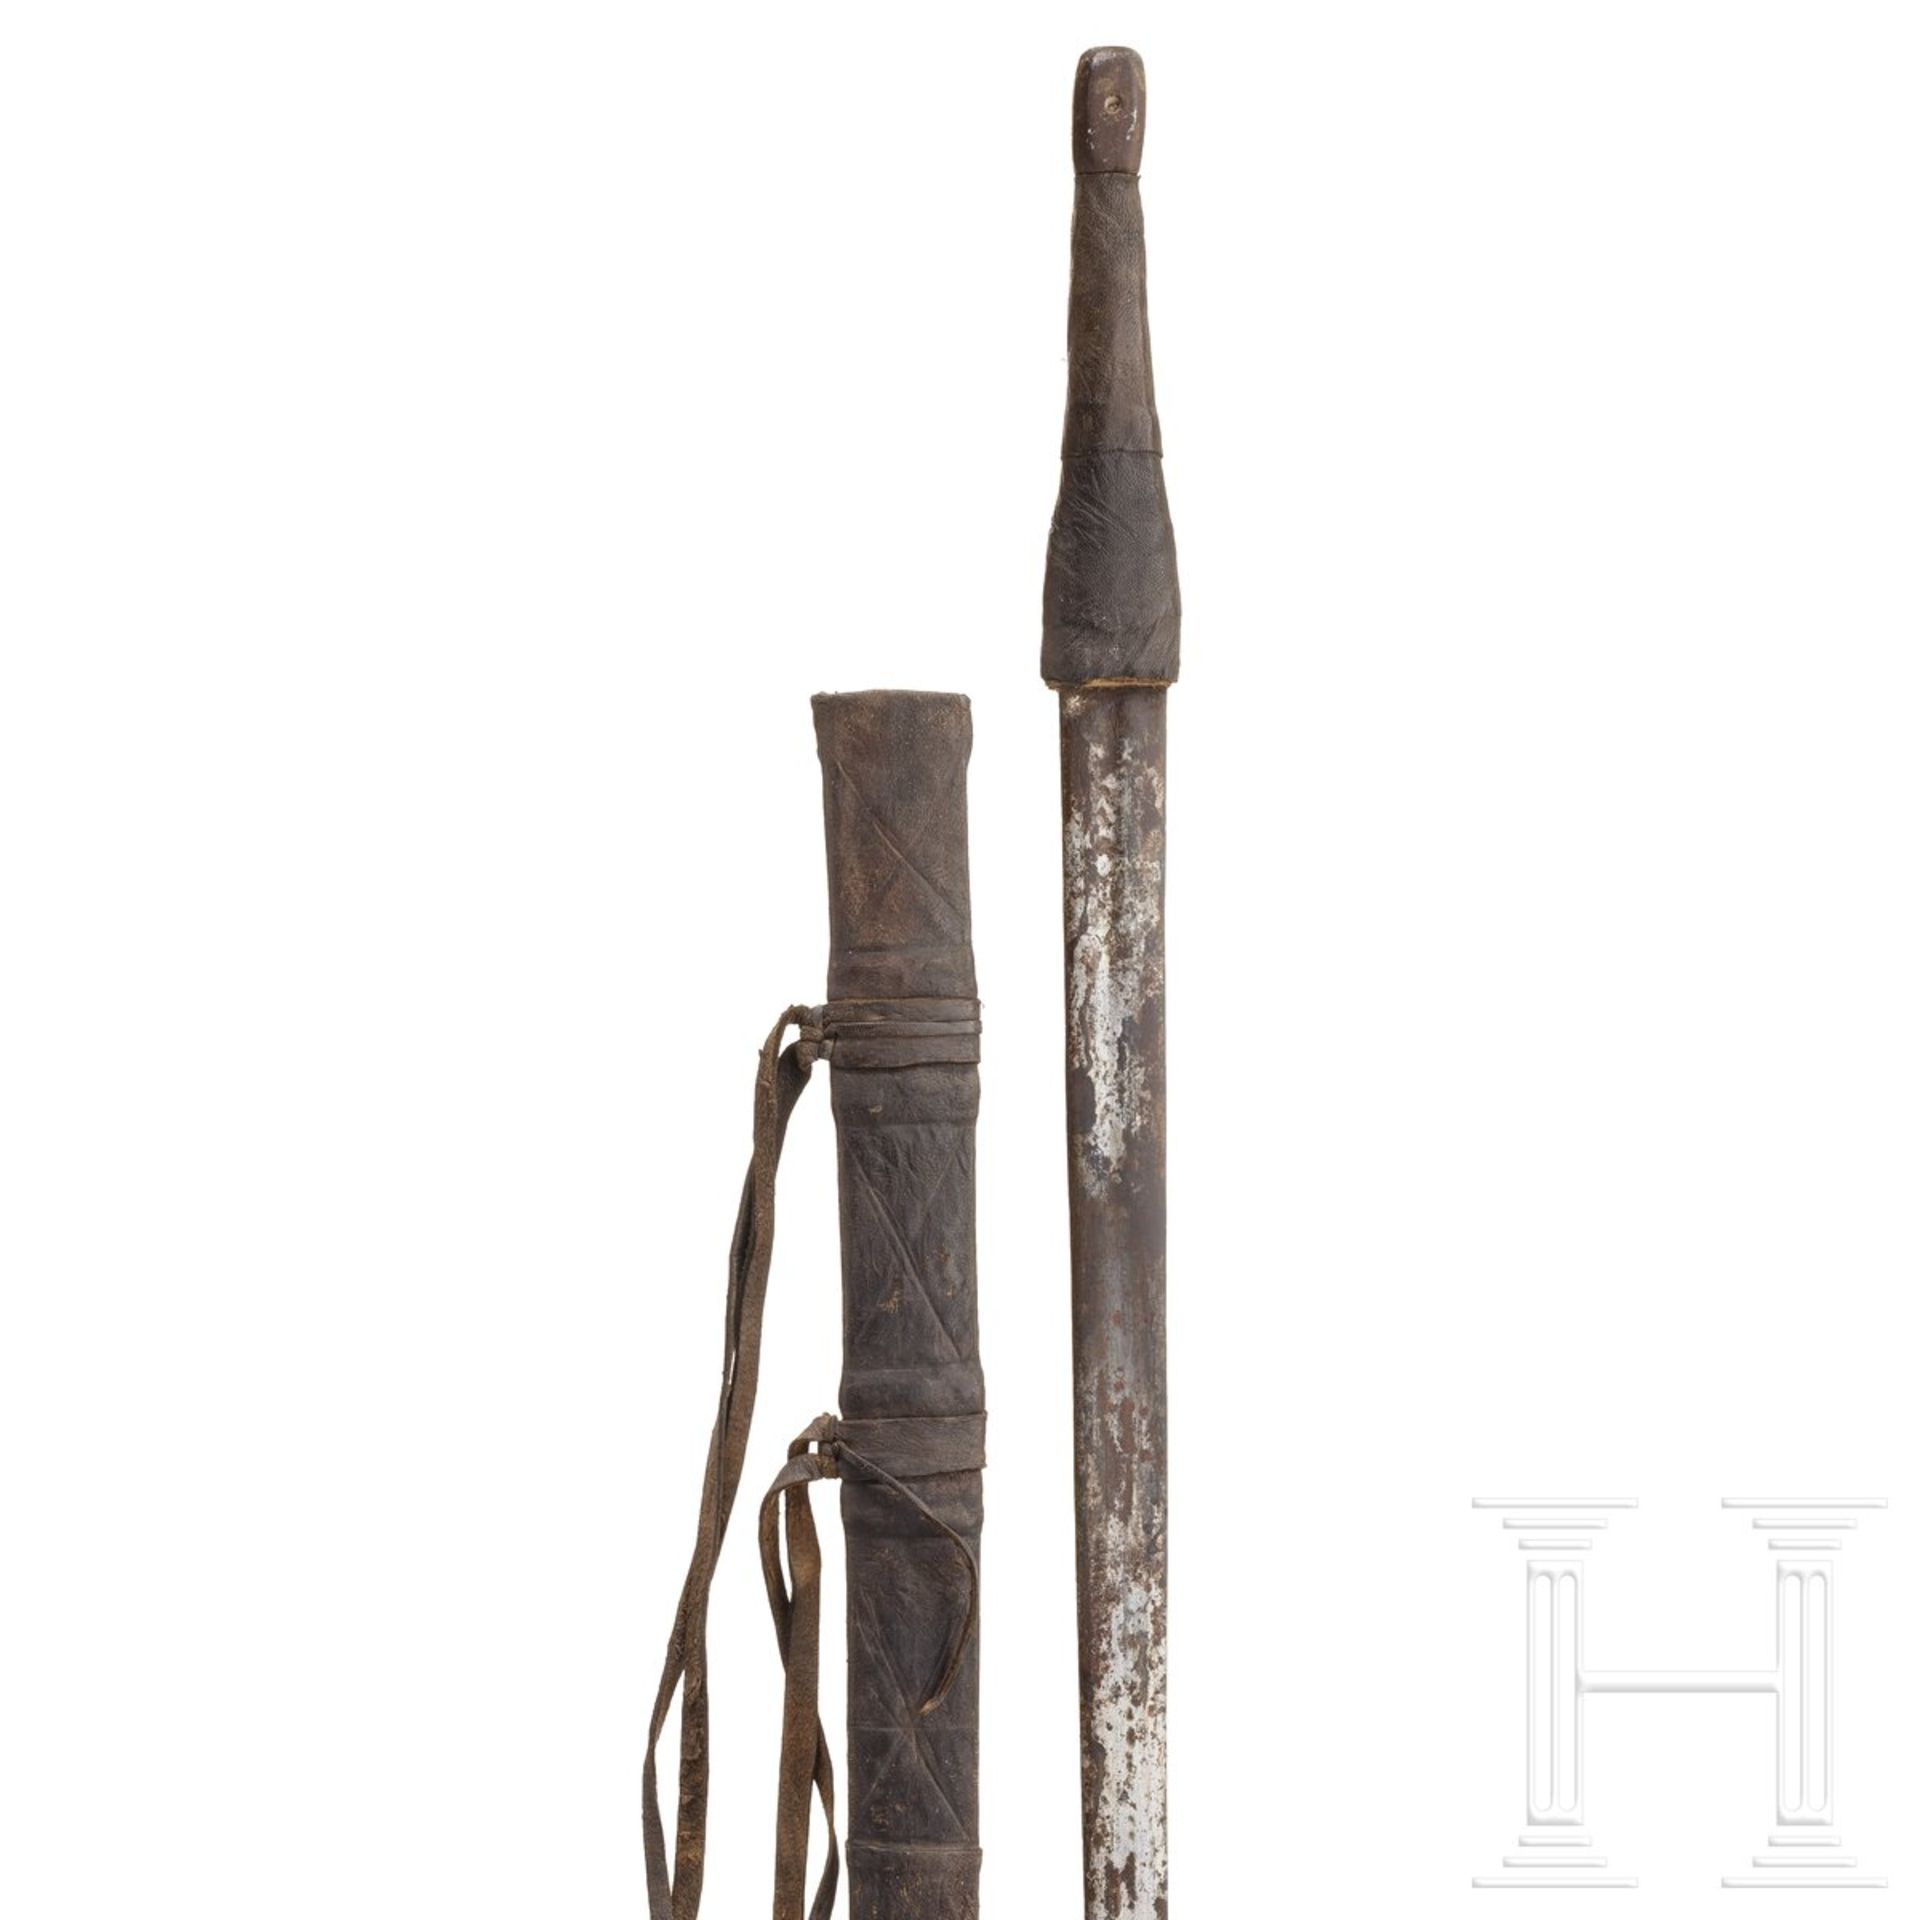 Schwert mit europäischer Klinge, Oman, 1. Hälfte 19. Jhdt. - Bild 3 aus 3